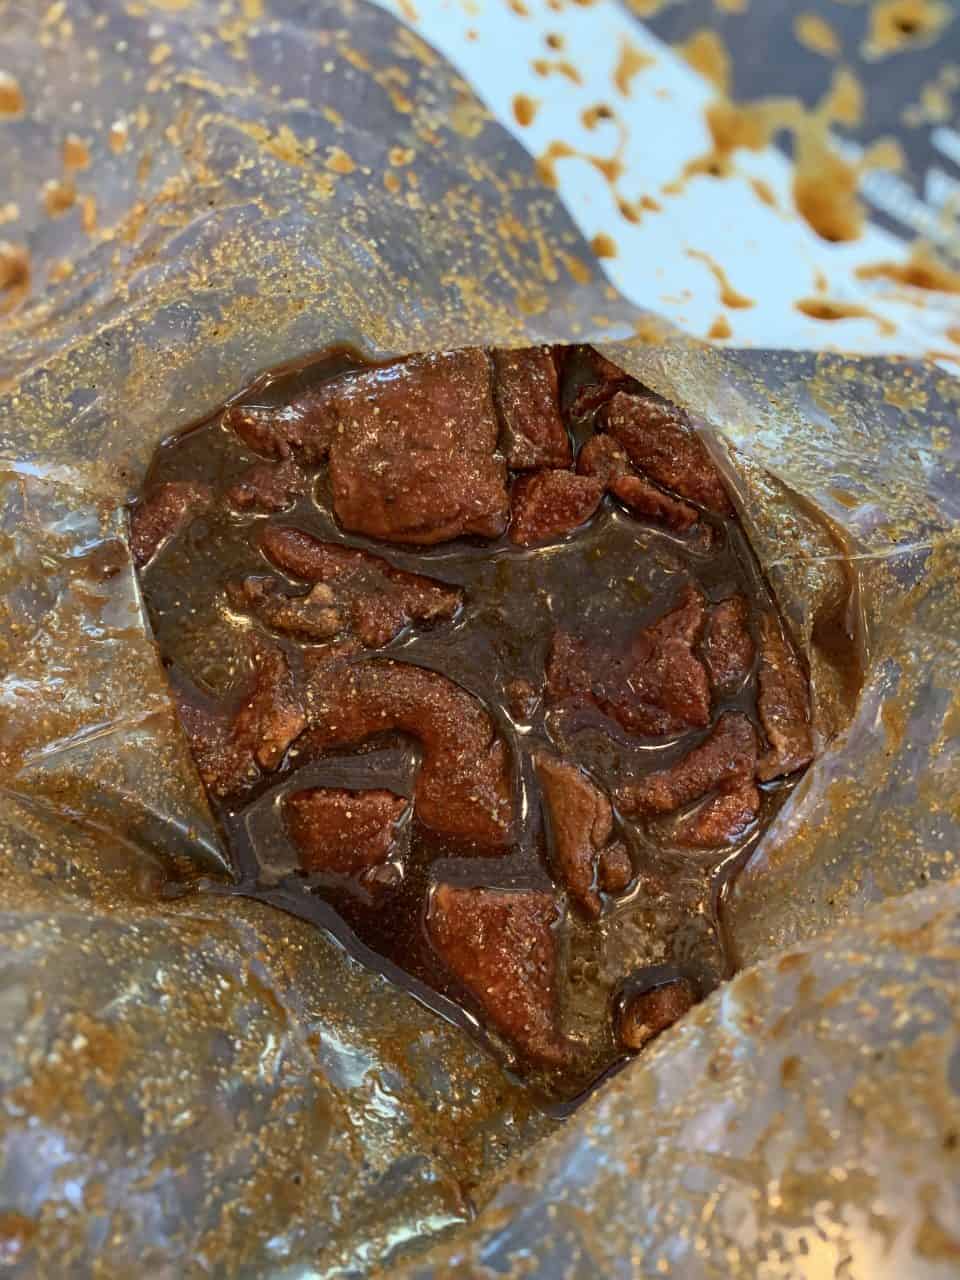 Beef strips in marinade in a zip top bag.